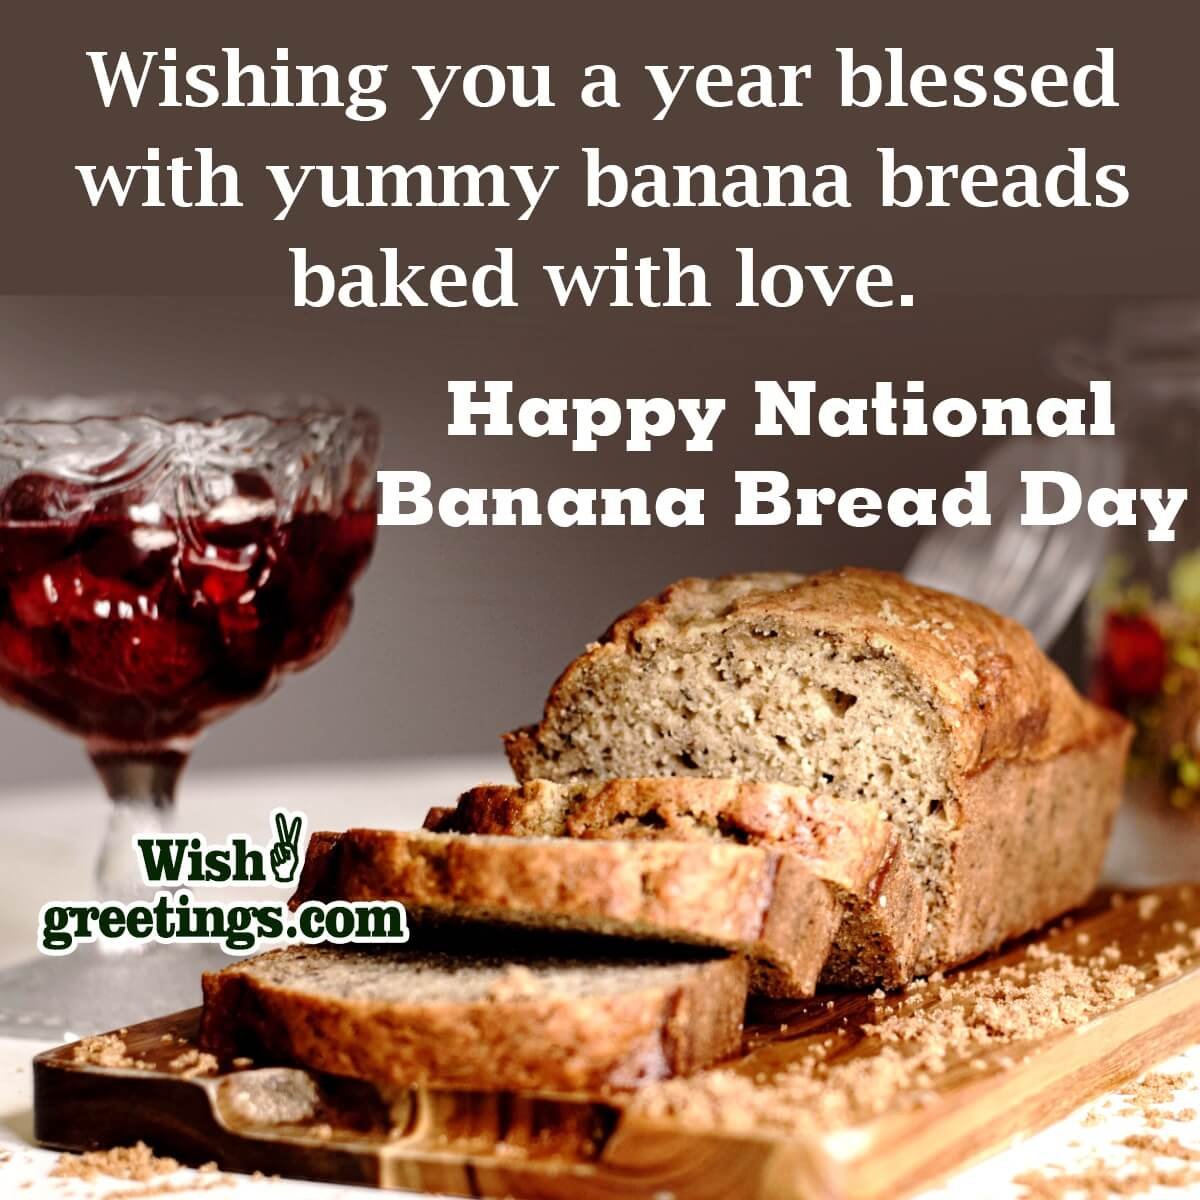 Happy National Banana Bread Day